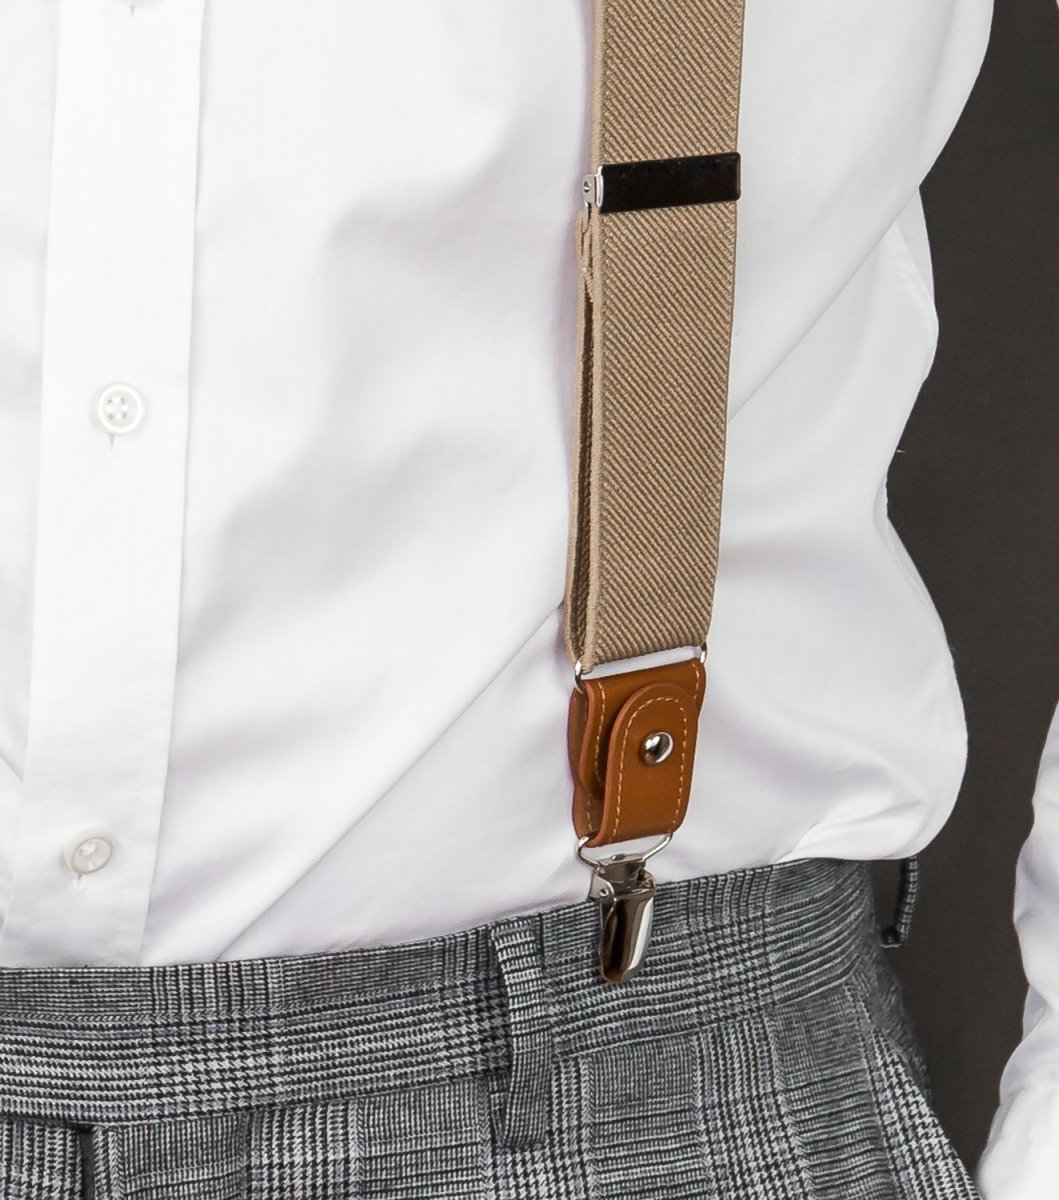 Beige suspenders with brown loops